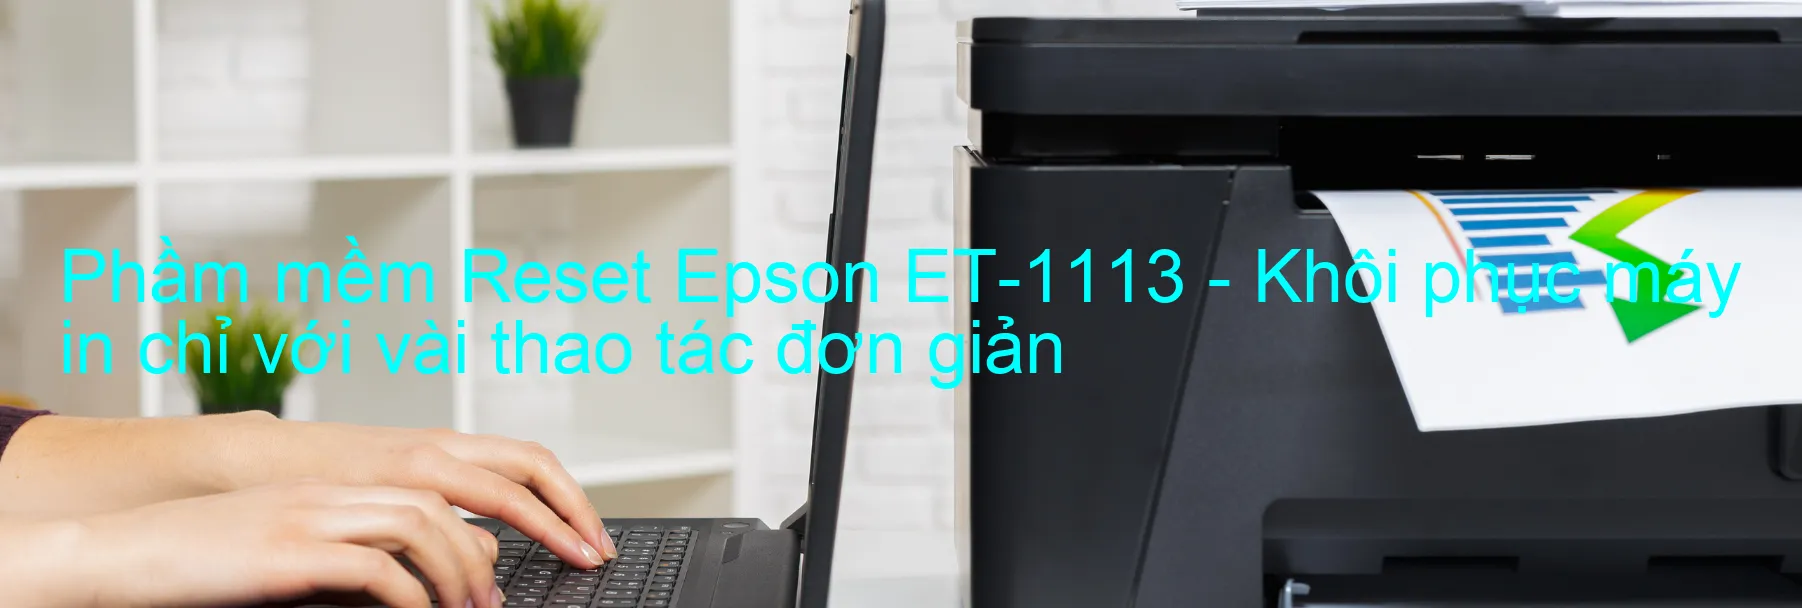 Phầm mềm Reset Epson ET-1113 - Khôi phục máy in chỉ với vài thao tác đơn giản